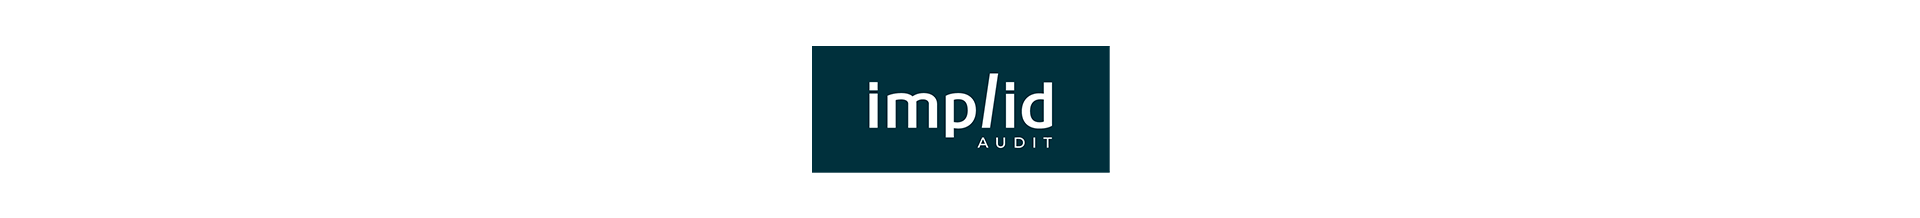 Header implid audit